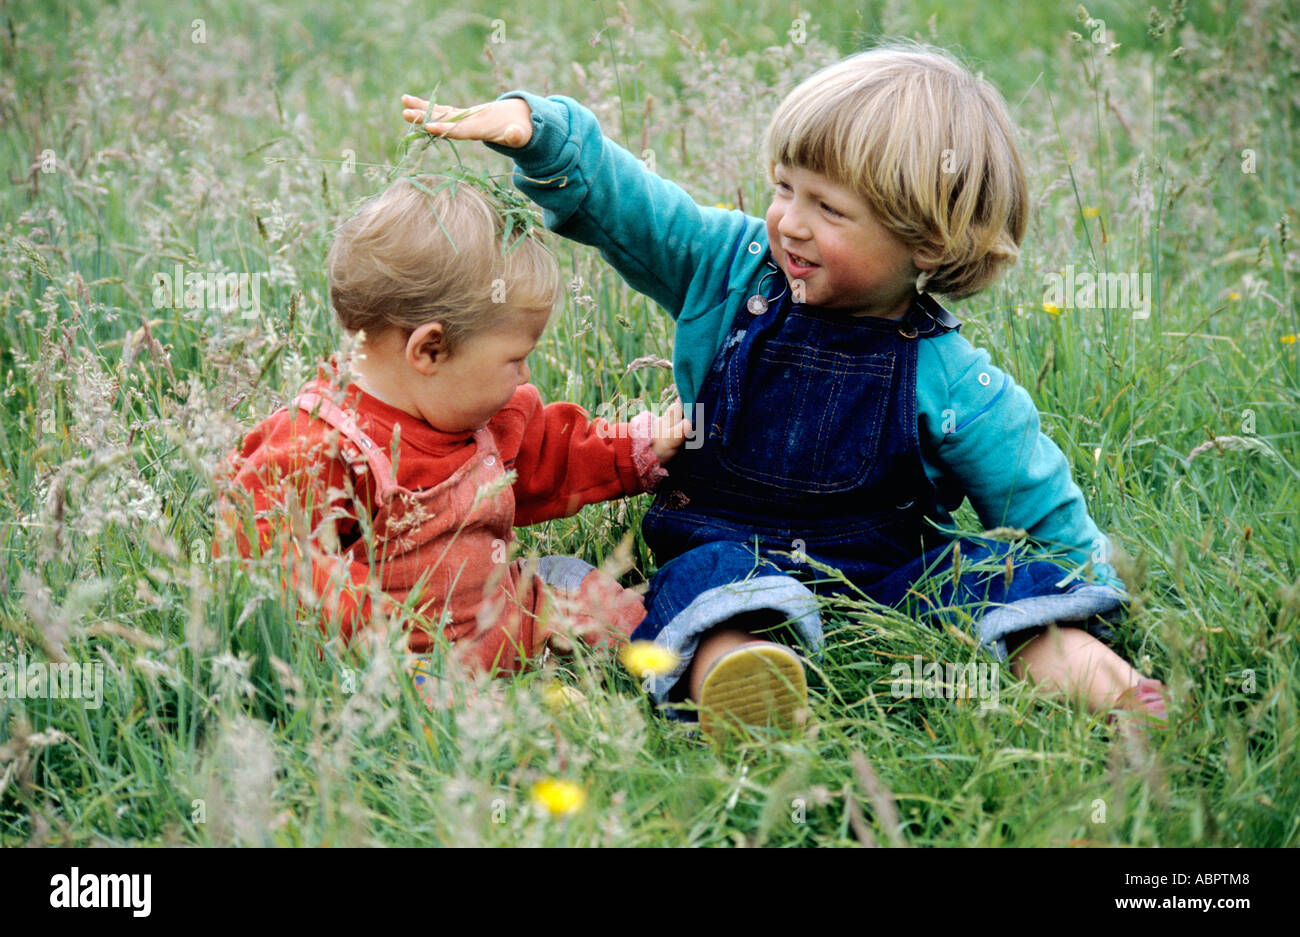 Frères et enfants - enfant assis dans l'herbe d'un champ Banque D'Images